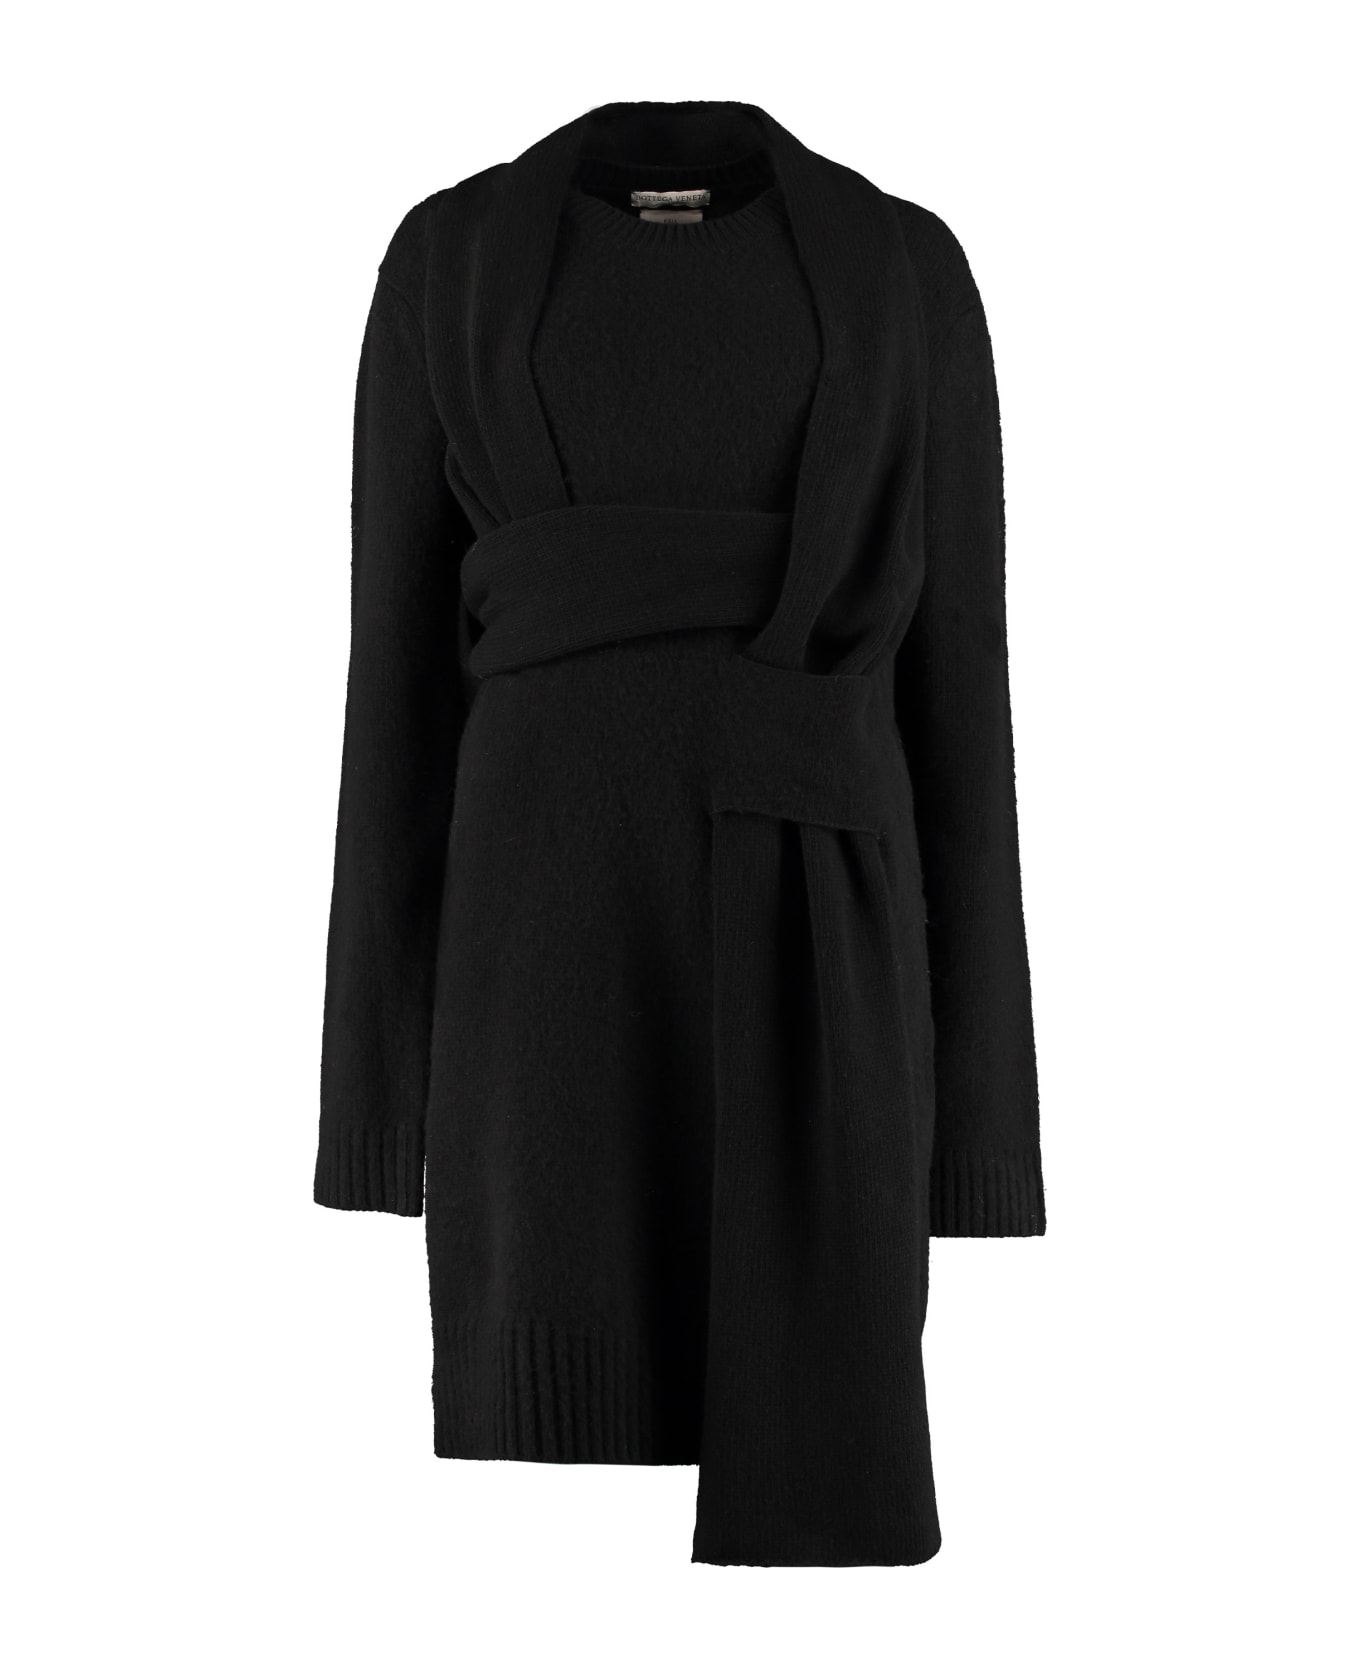 Bottega Veneta Knitted Dress - black